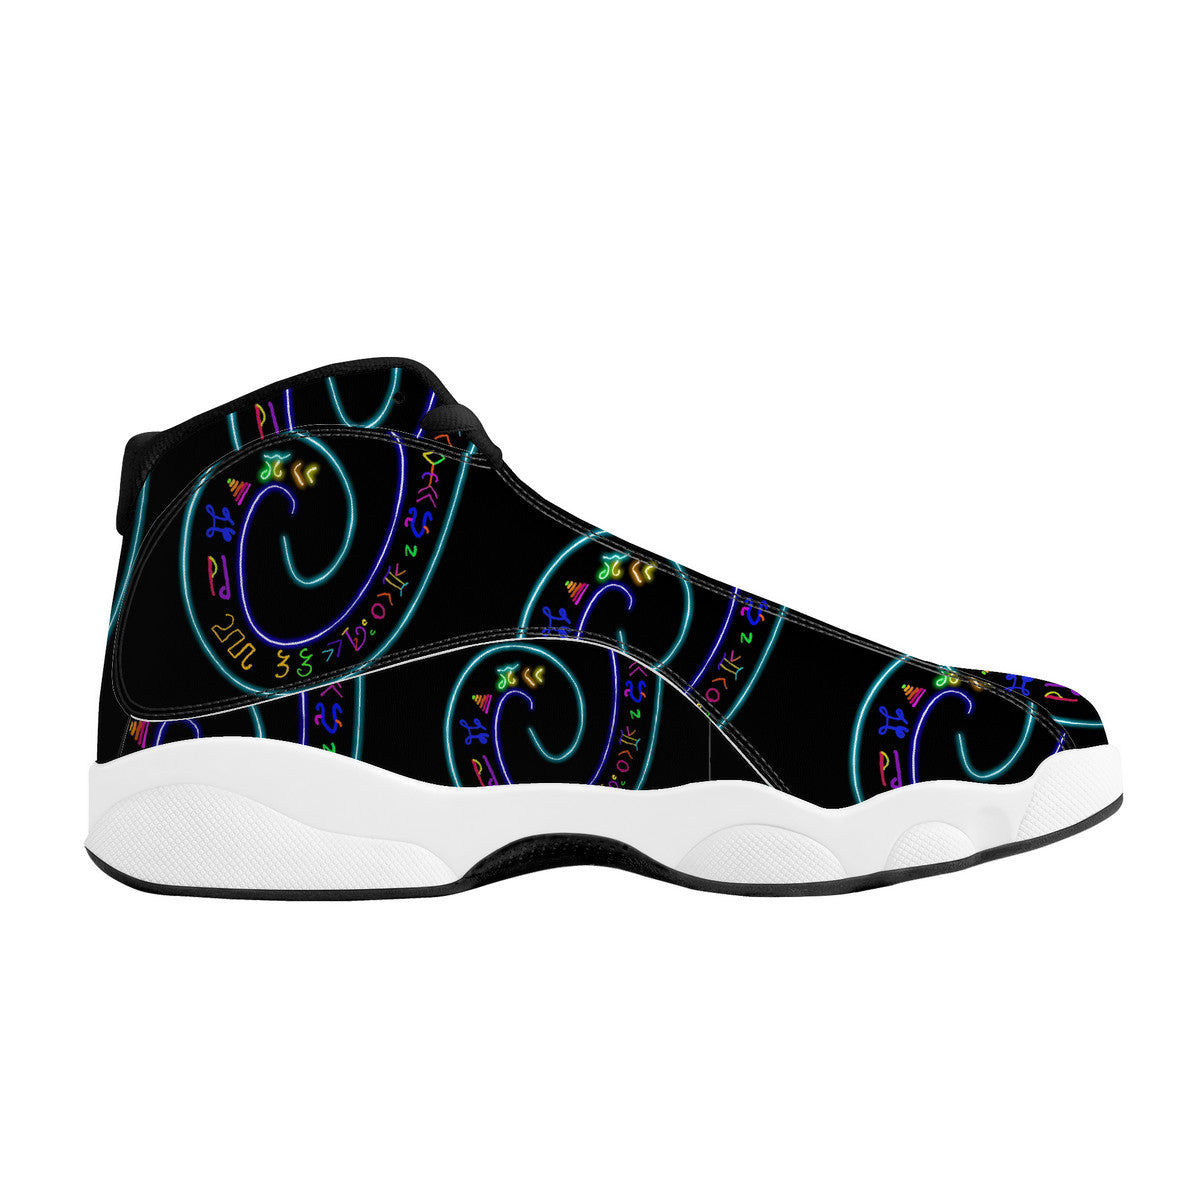 L'nuk freedom | Basketball Shoes Customized | Shoe Zero